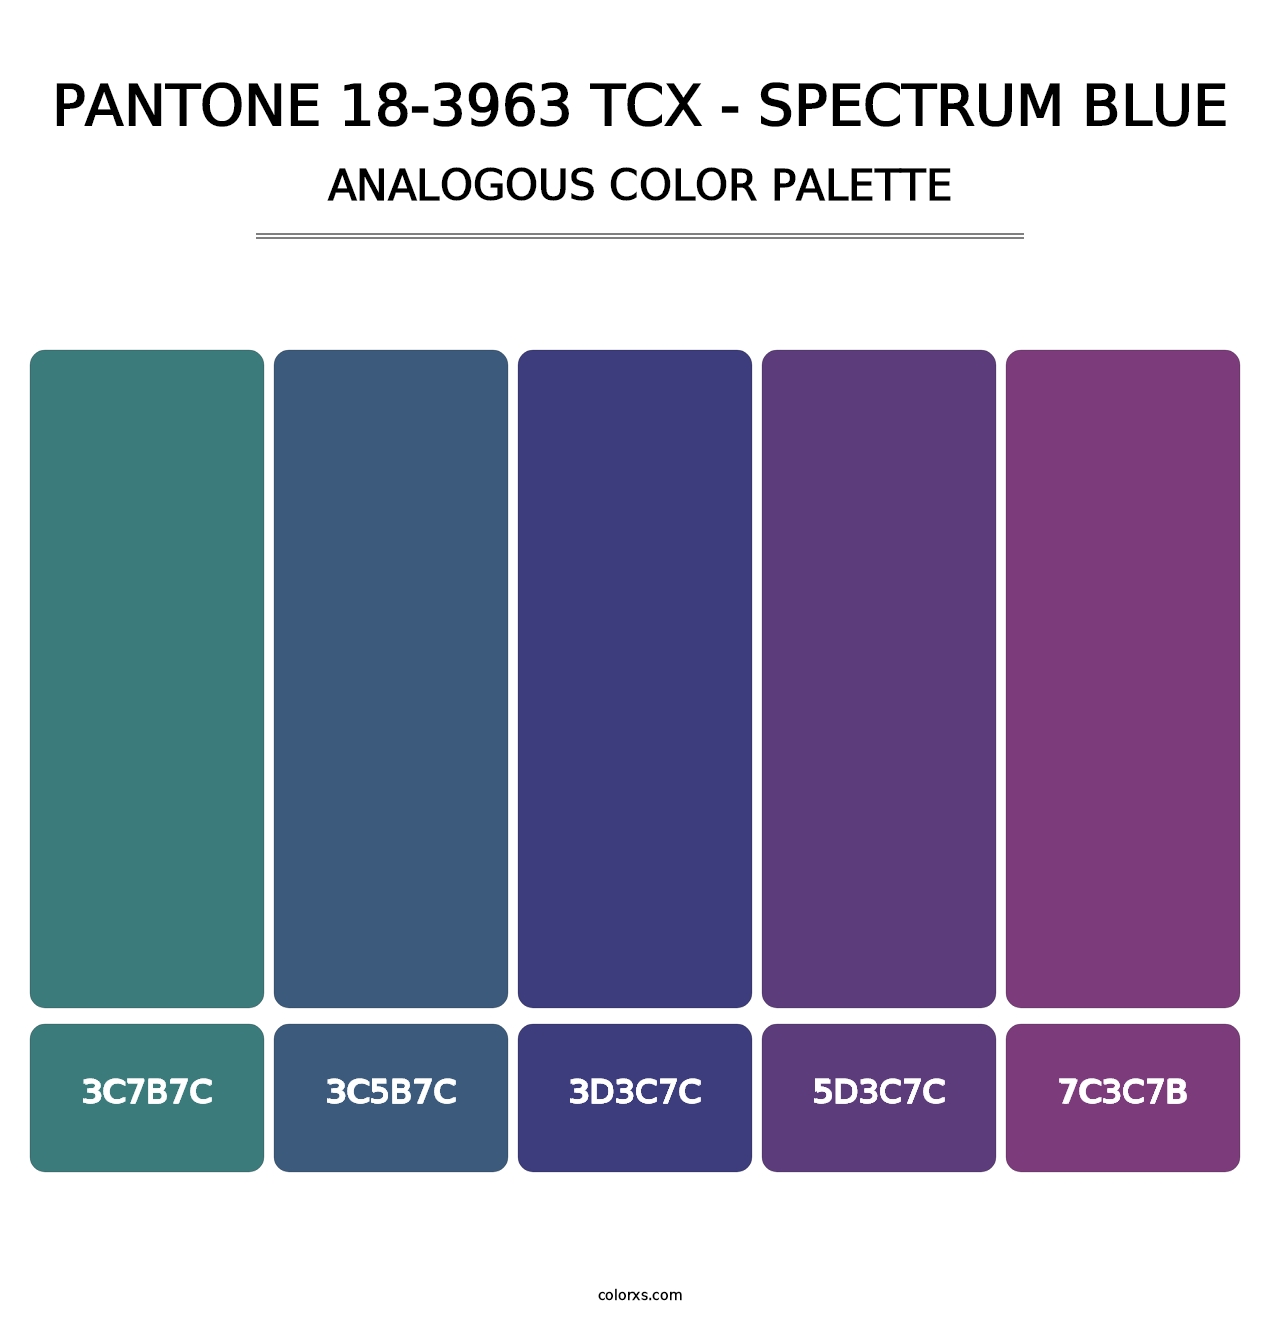 PANTONE 18-3963 TCX - Spectrum Blue - Analogous Color Palette